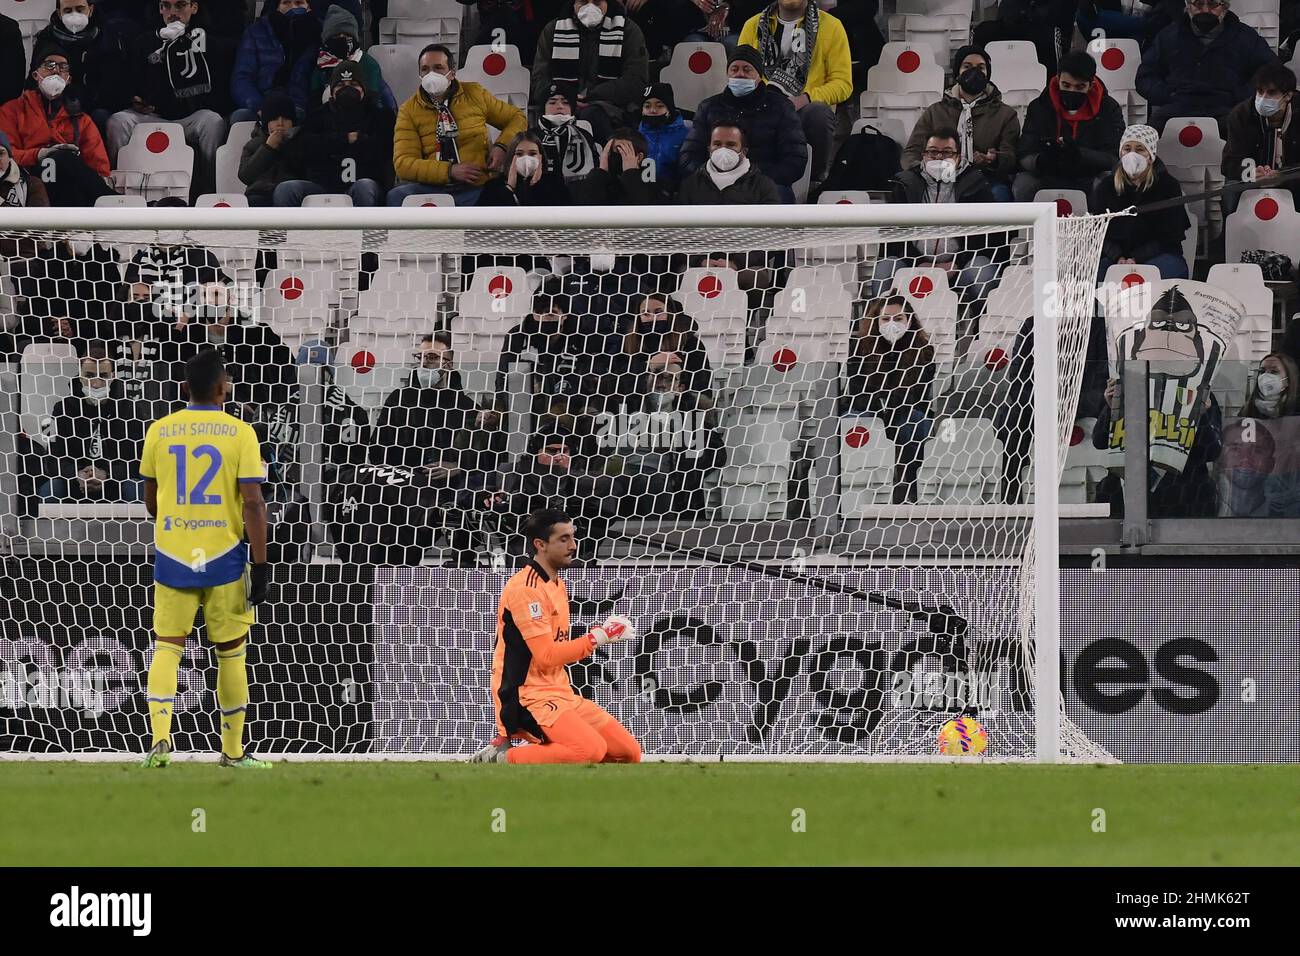 Mattia Perin de Juventus FC réagit lors du match de Coppa Italia 2021/22 entre Juventus FC et US Sassuolo au stade Allianz le 10 février 2022 à Turin, en Italie Banque D'Images